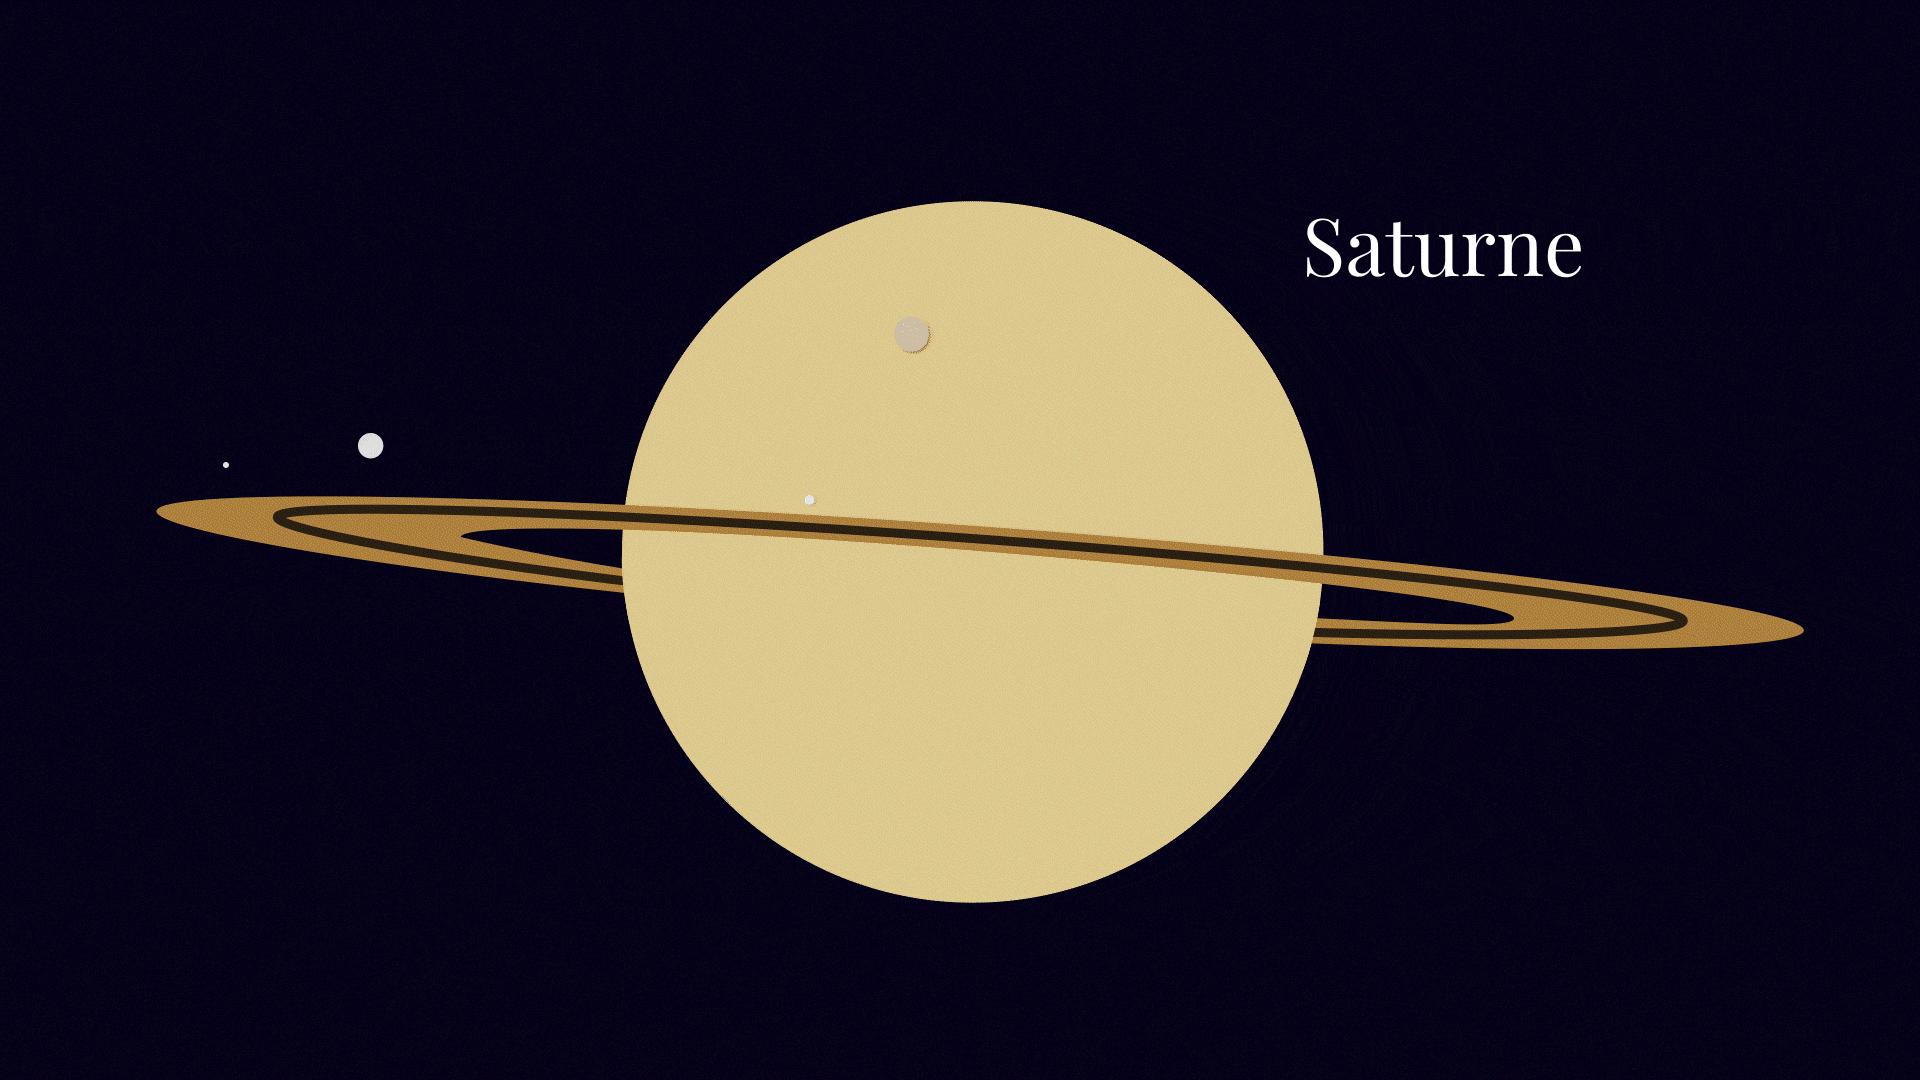 Encelade, une des lunes de Saturne. // Source : Nino Barbey pour Numerama